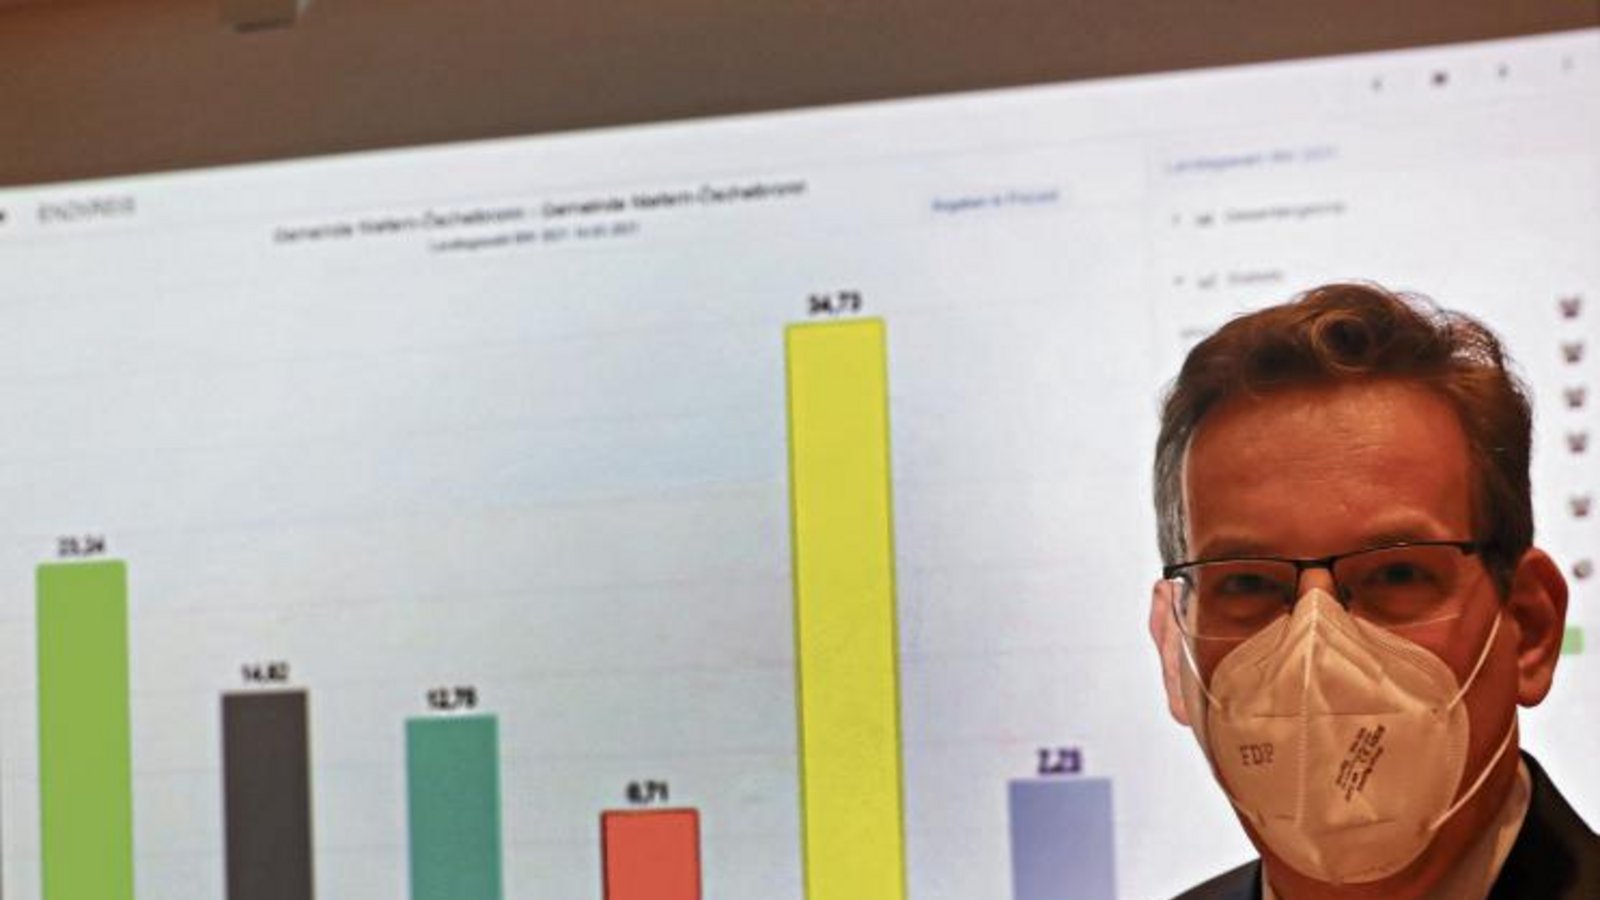 Coronakonform verdecktes Strahlen: Erik Schweickert freut sich über sein gutes Ergebnis, das er für die FDP im Enzkreis geholt hat. Vor allem die Ergebnisse seiner Heimatgemeinde Niefern-Öschelbronn (Hintergrund) sprechen für sich: Schweickert holte dort 34,73 Prozent. Foto: Küppers